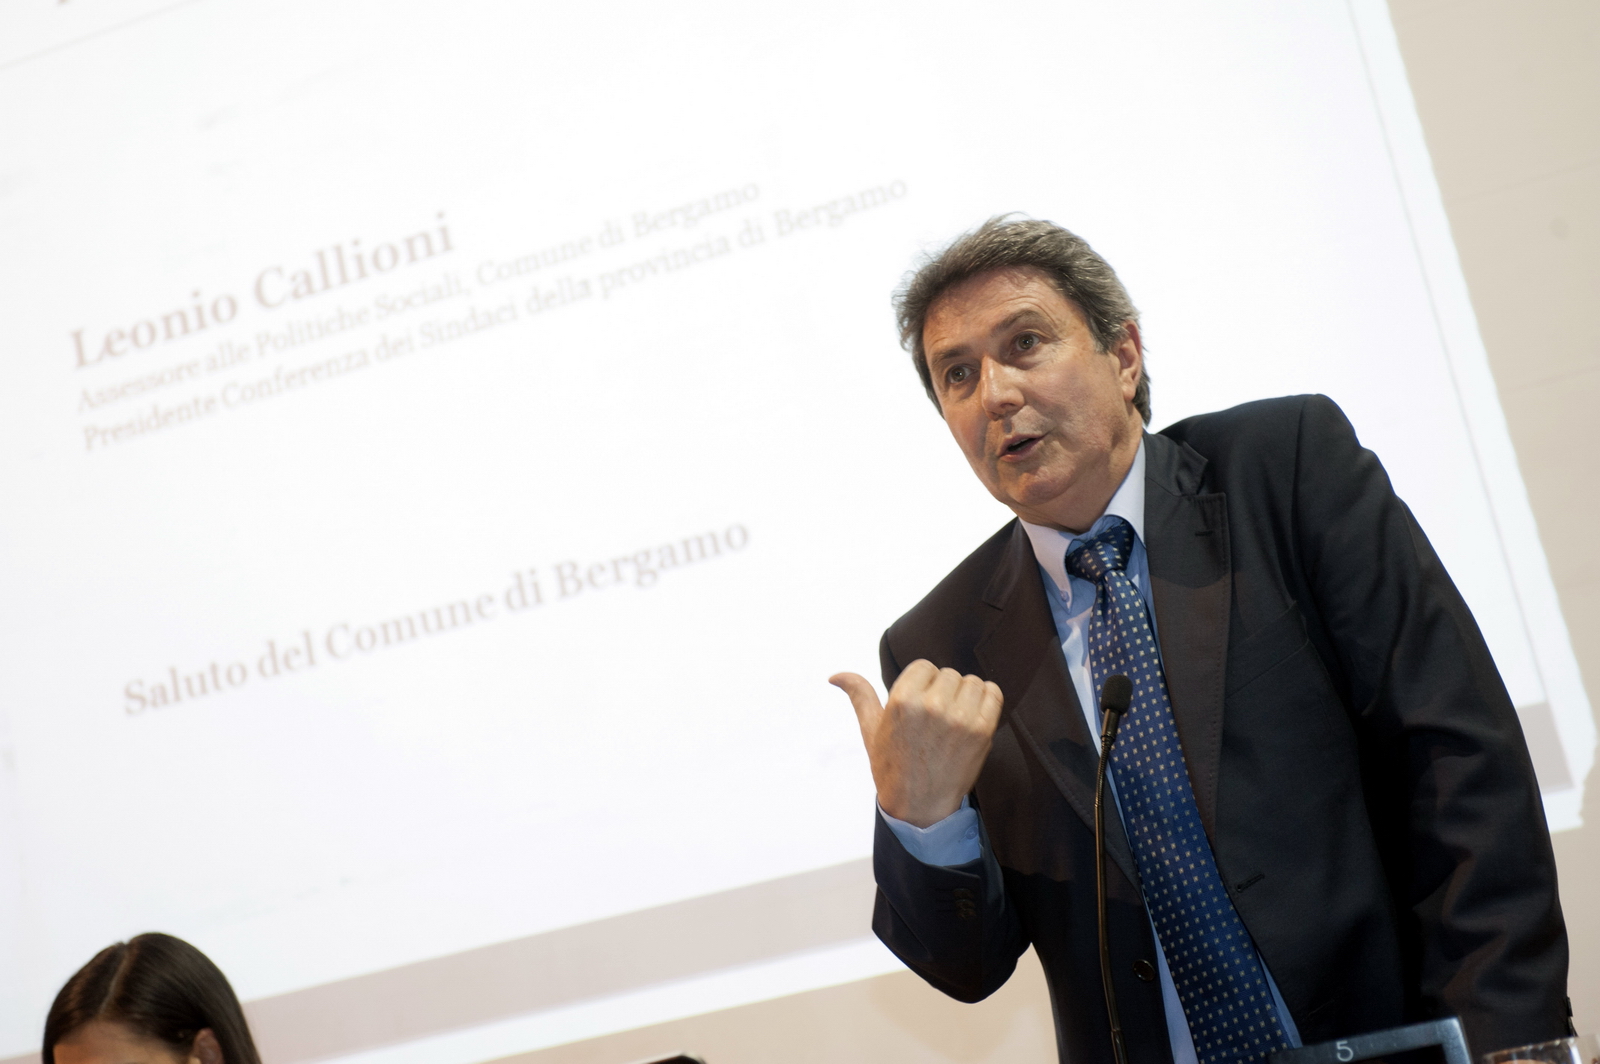 28.6.2013 Interviene Leonio Callioni, Assessore Politiche Sociali, Comune di Bergamo